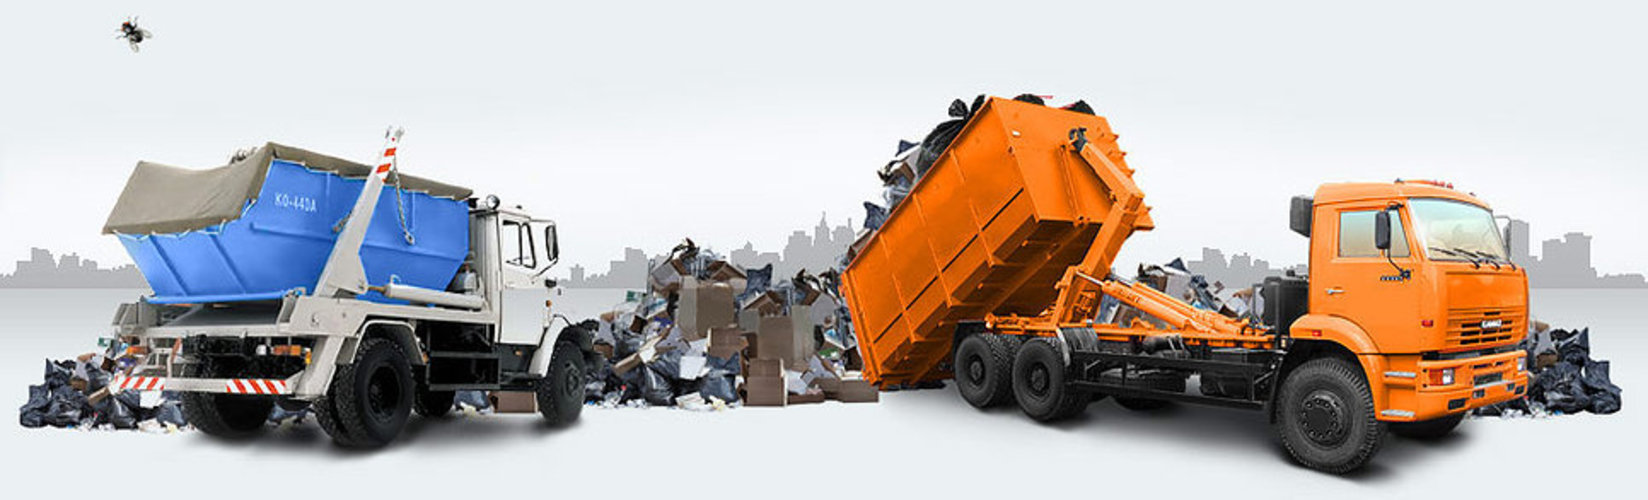 Имеет ли право дачник отказаться от услуги по вывозу твердых коммунальных отходов?